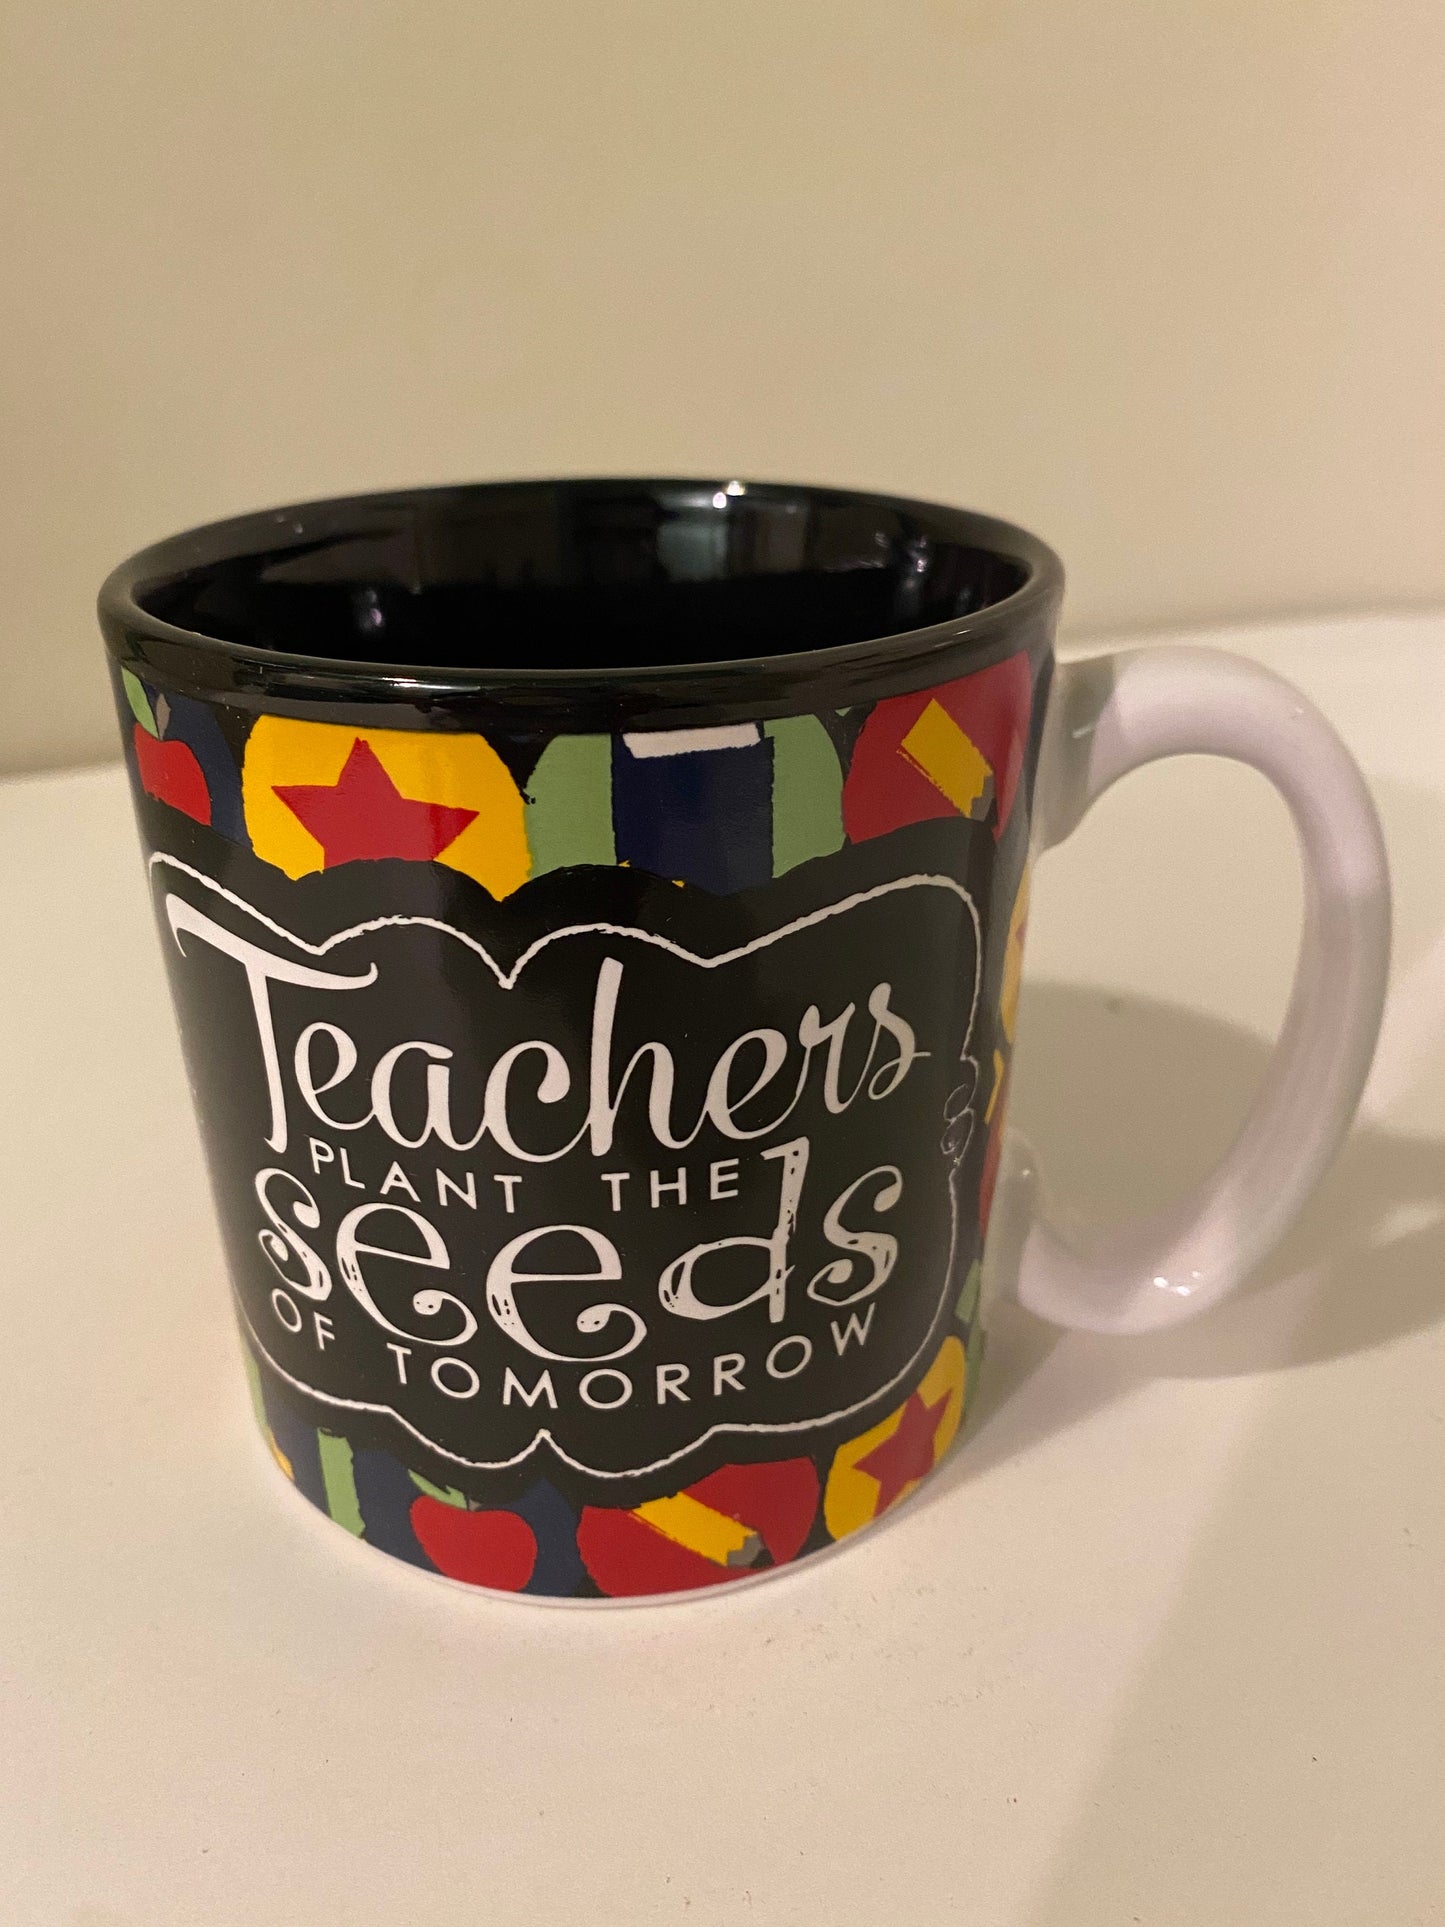 Teachers Plant the Seeds of Tomorrow Coffee Mug